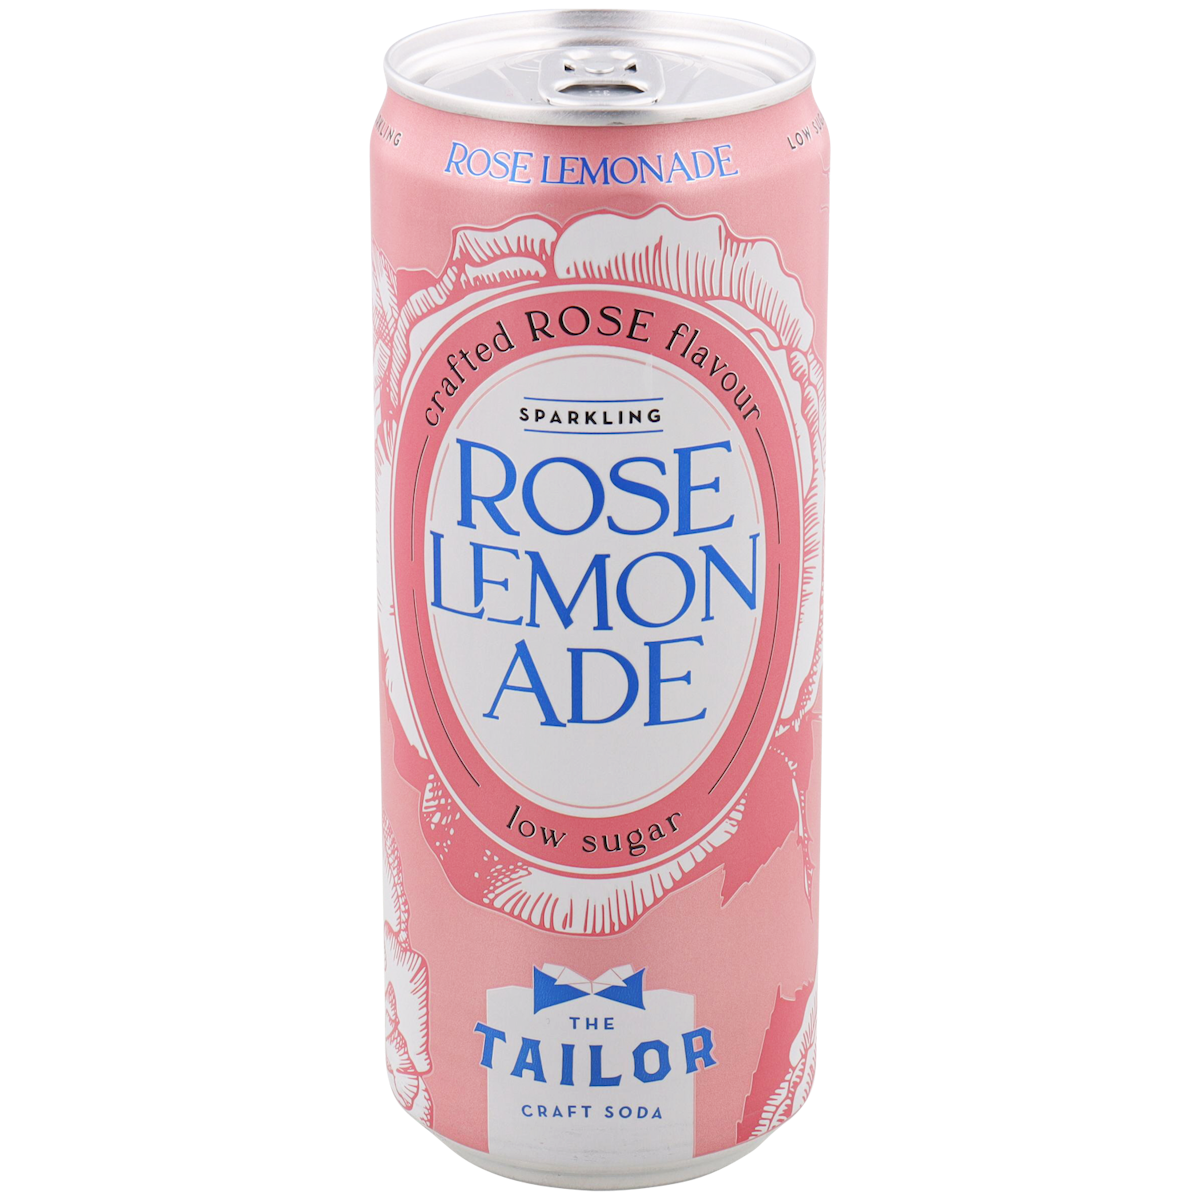 Rose lemonade